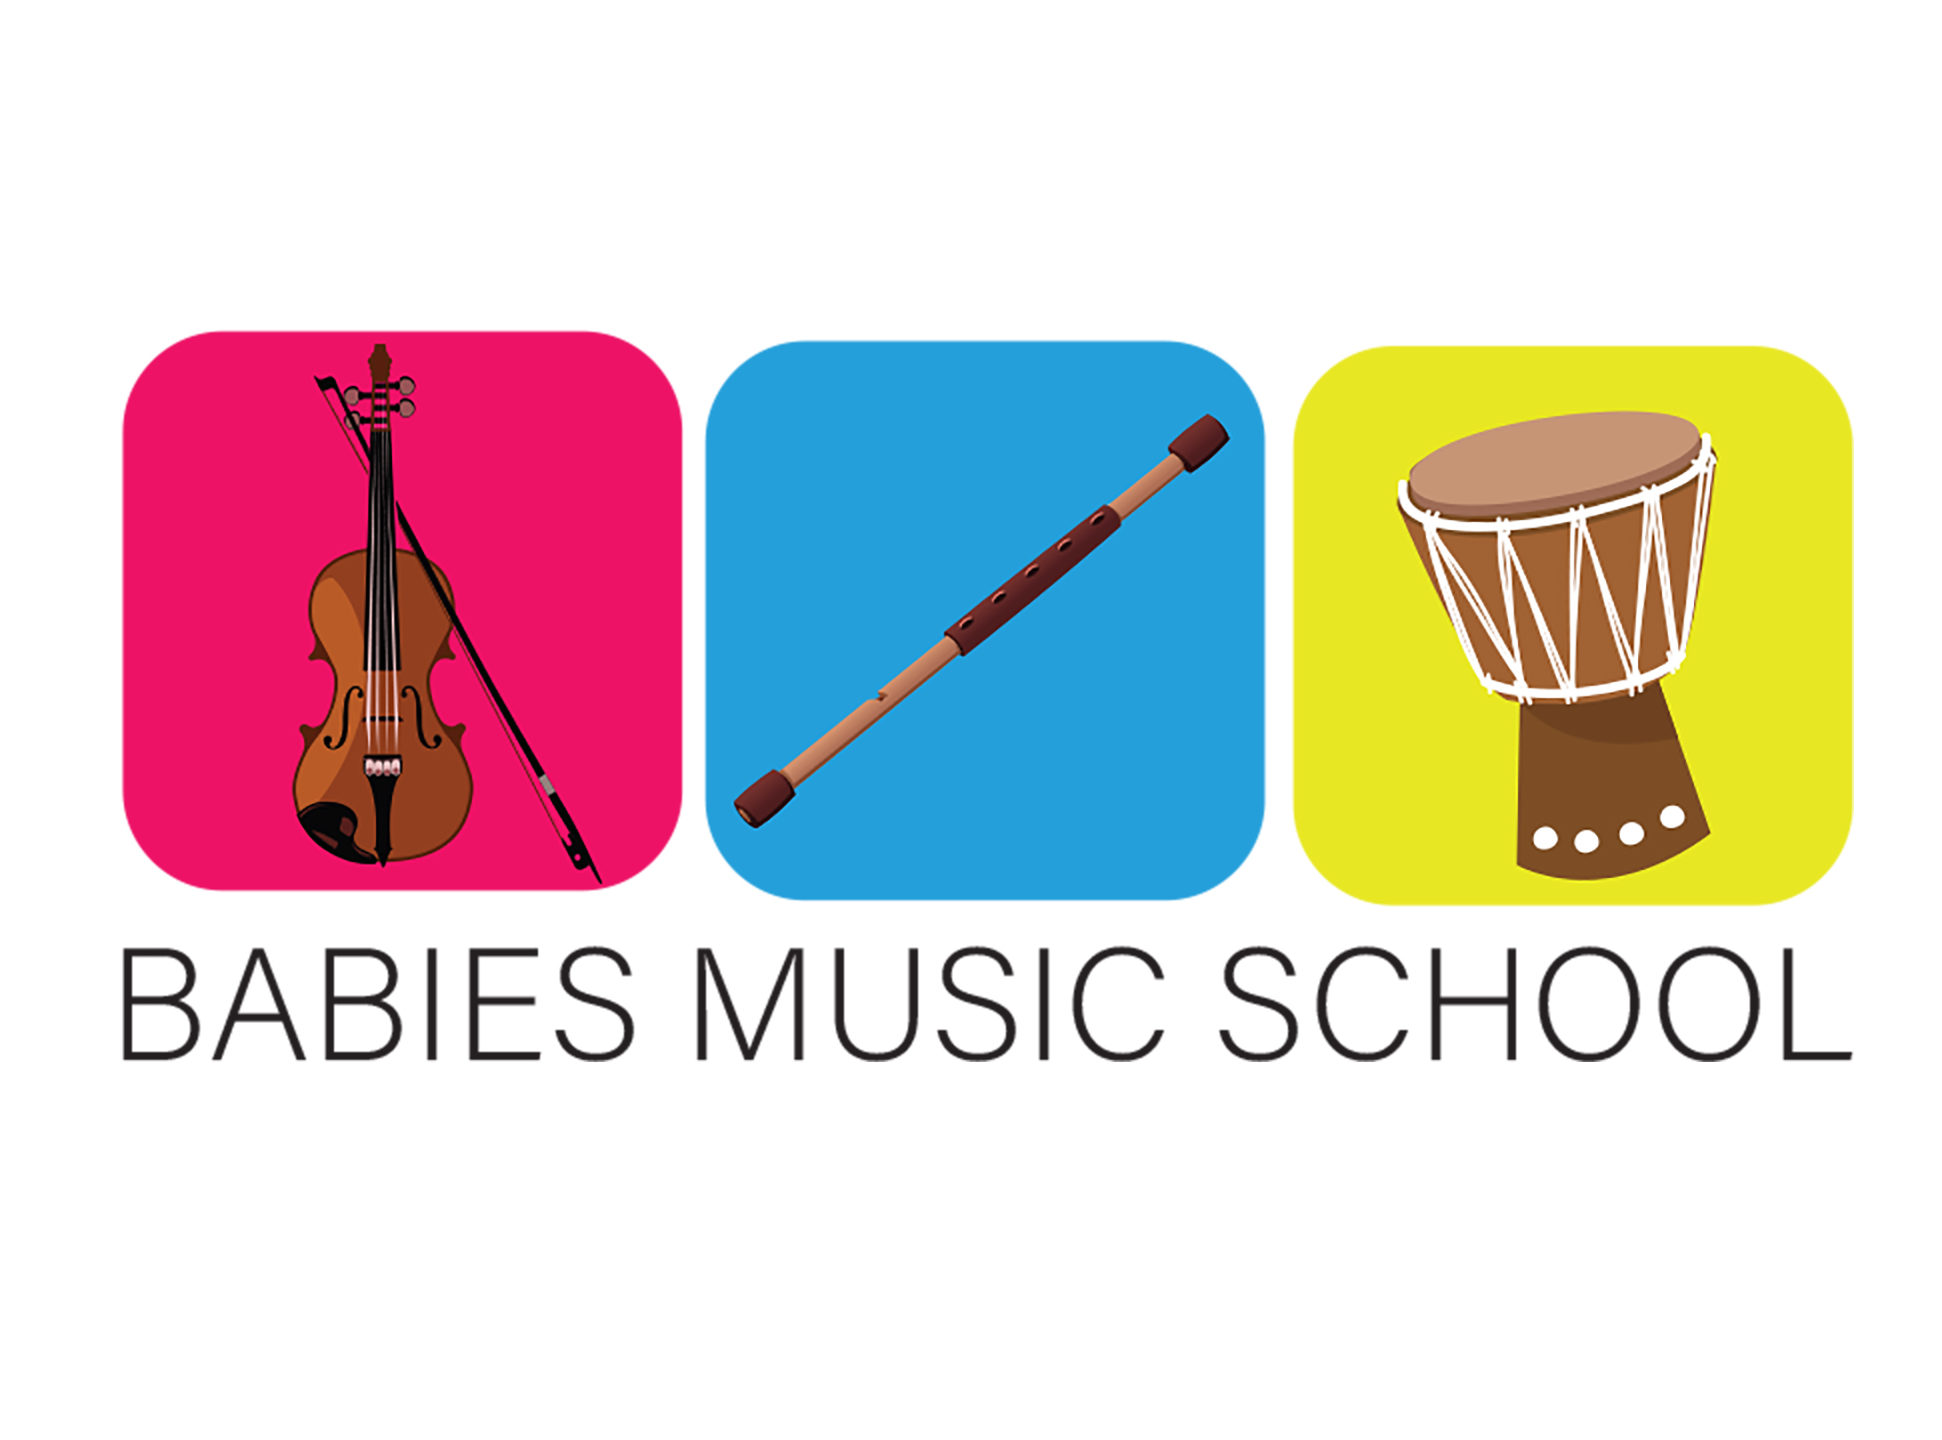 Babies Music School